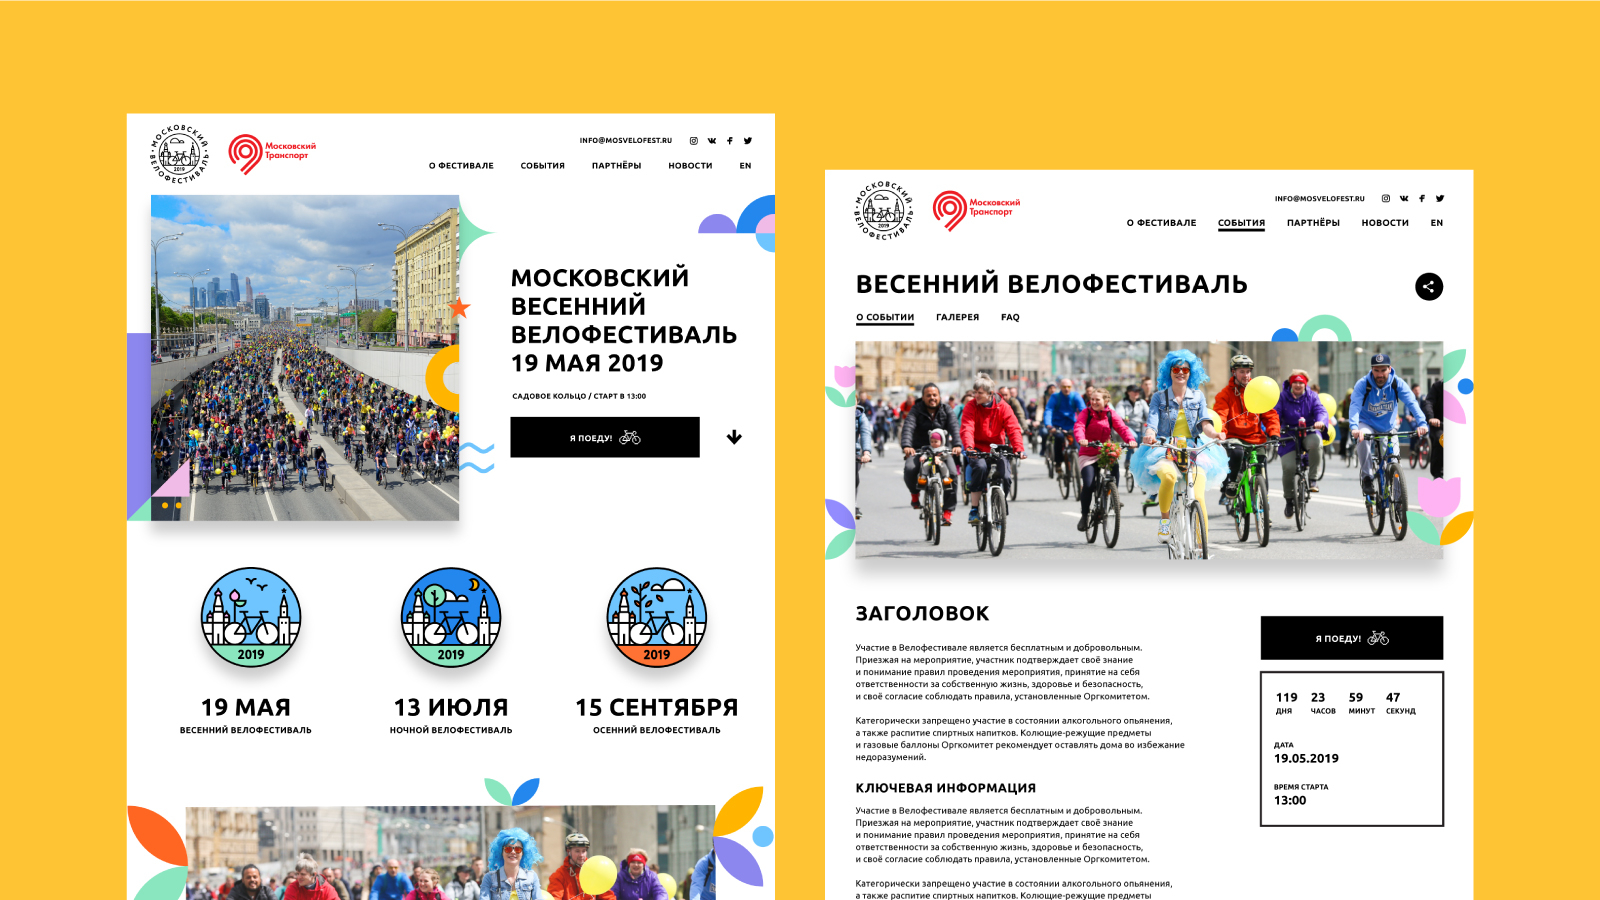 Разработанный дизайн сайта Велофестиваля максимально лаконичен, информативен и передает дух события.